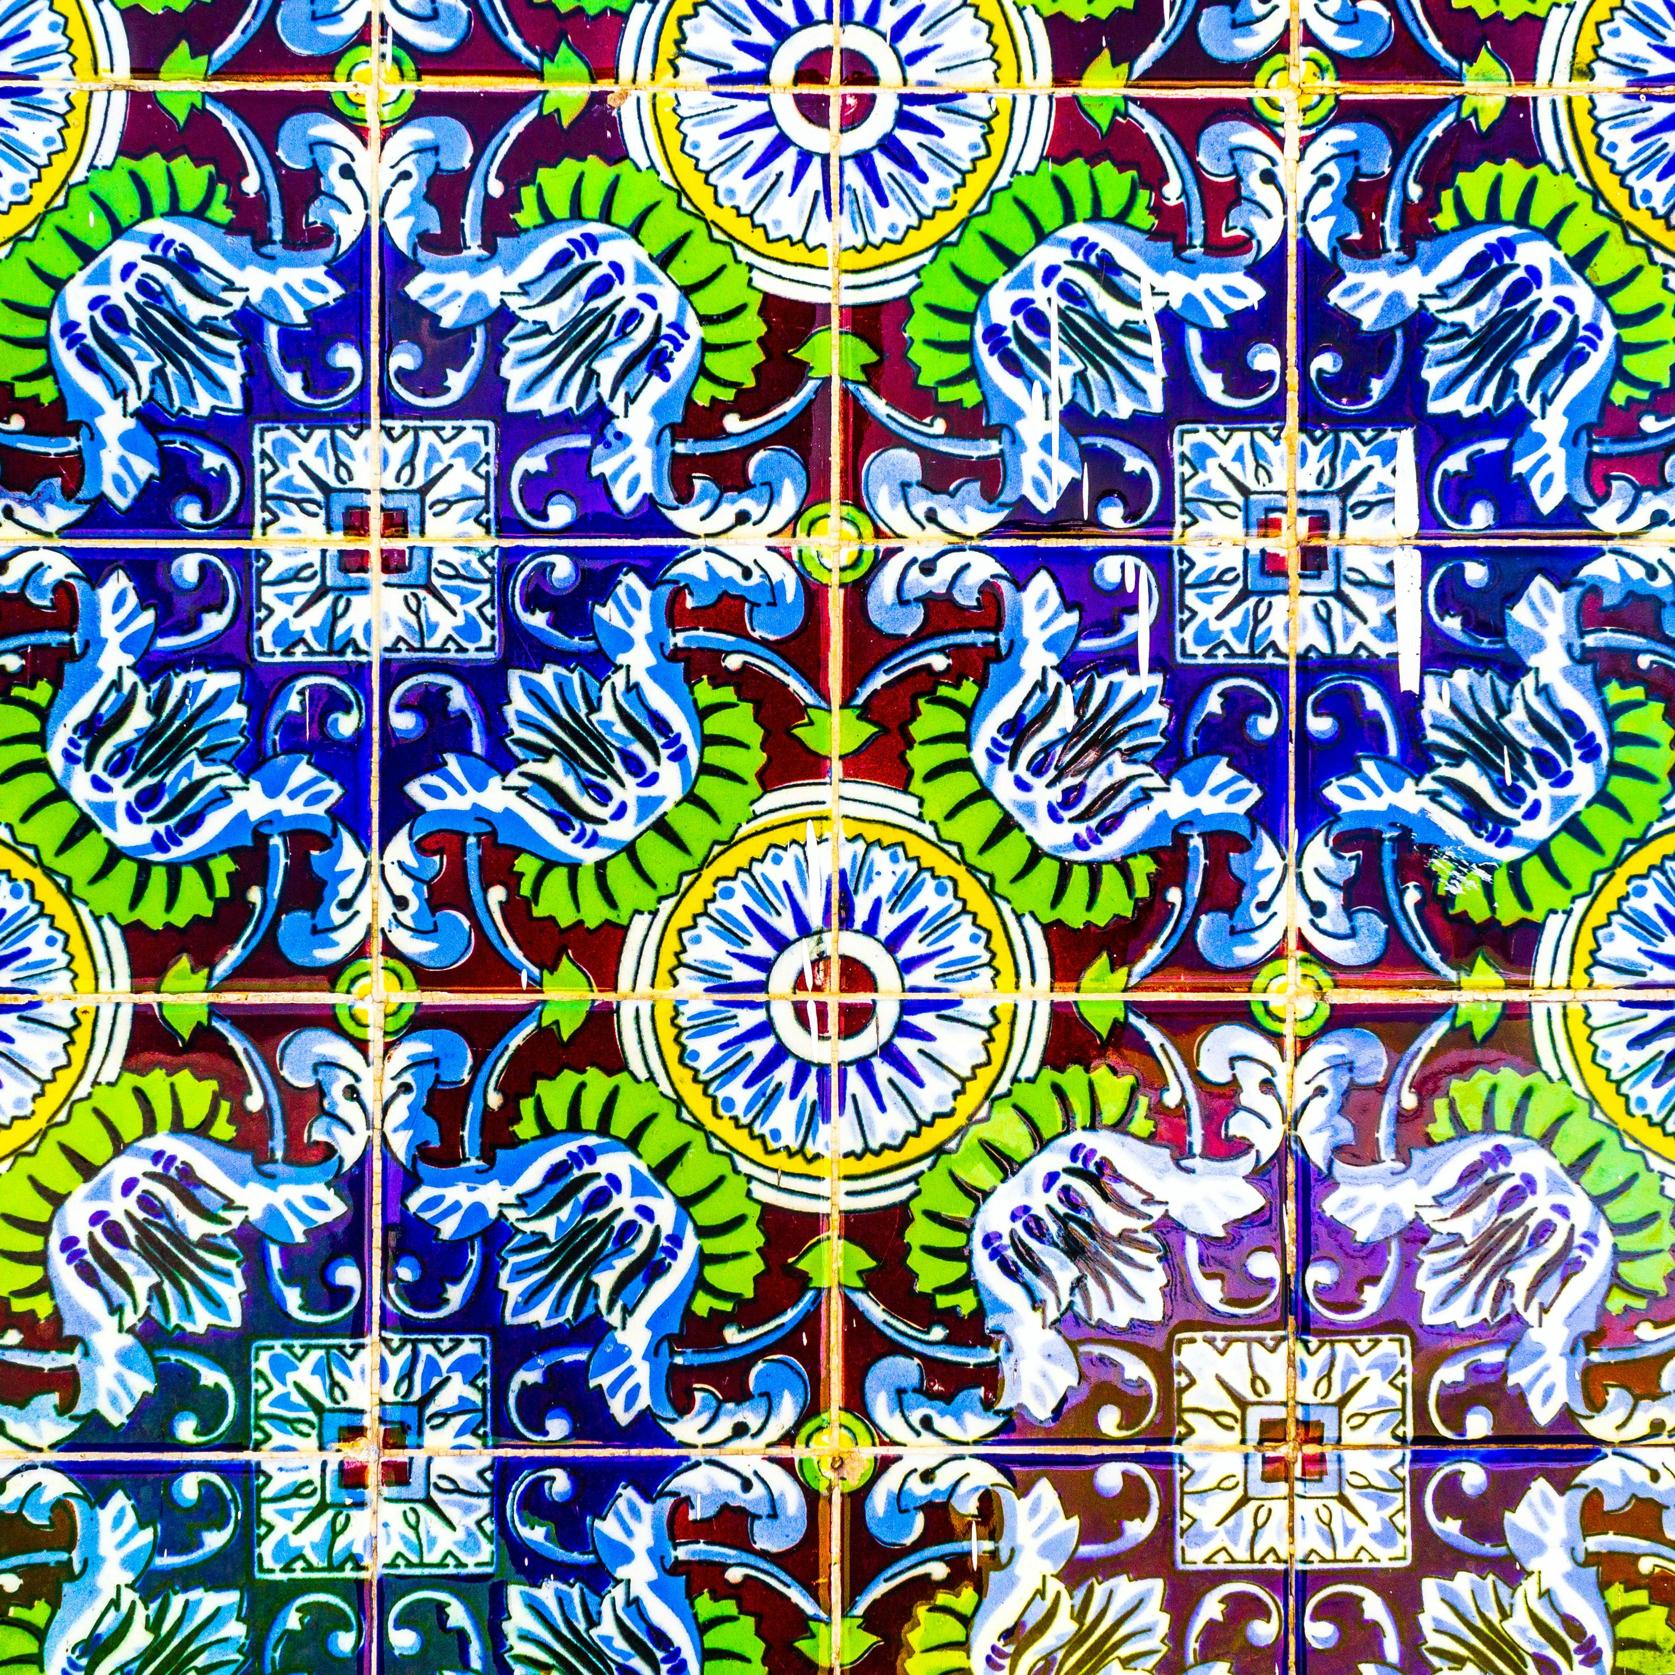 Kolorystyka i wzornictwo w marokańskich dekoracjach